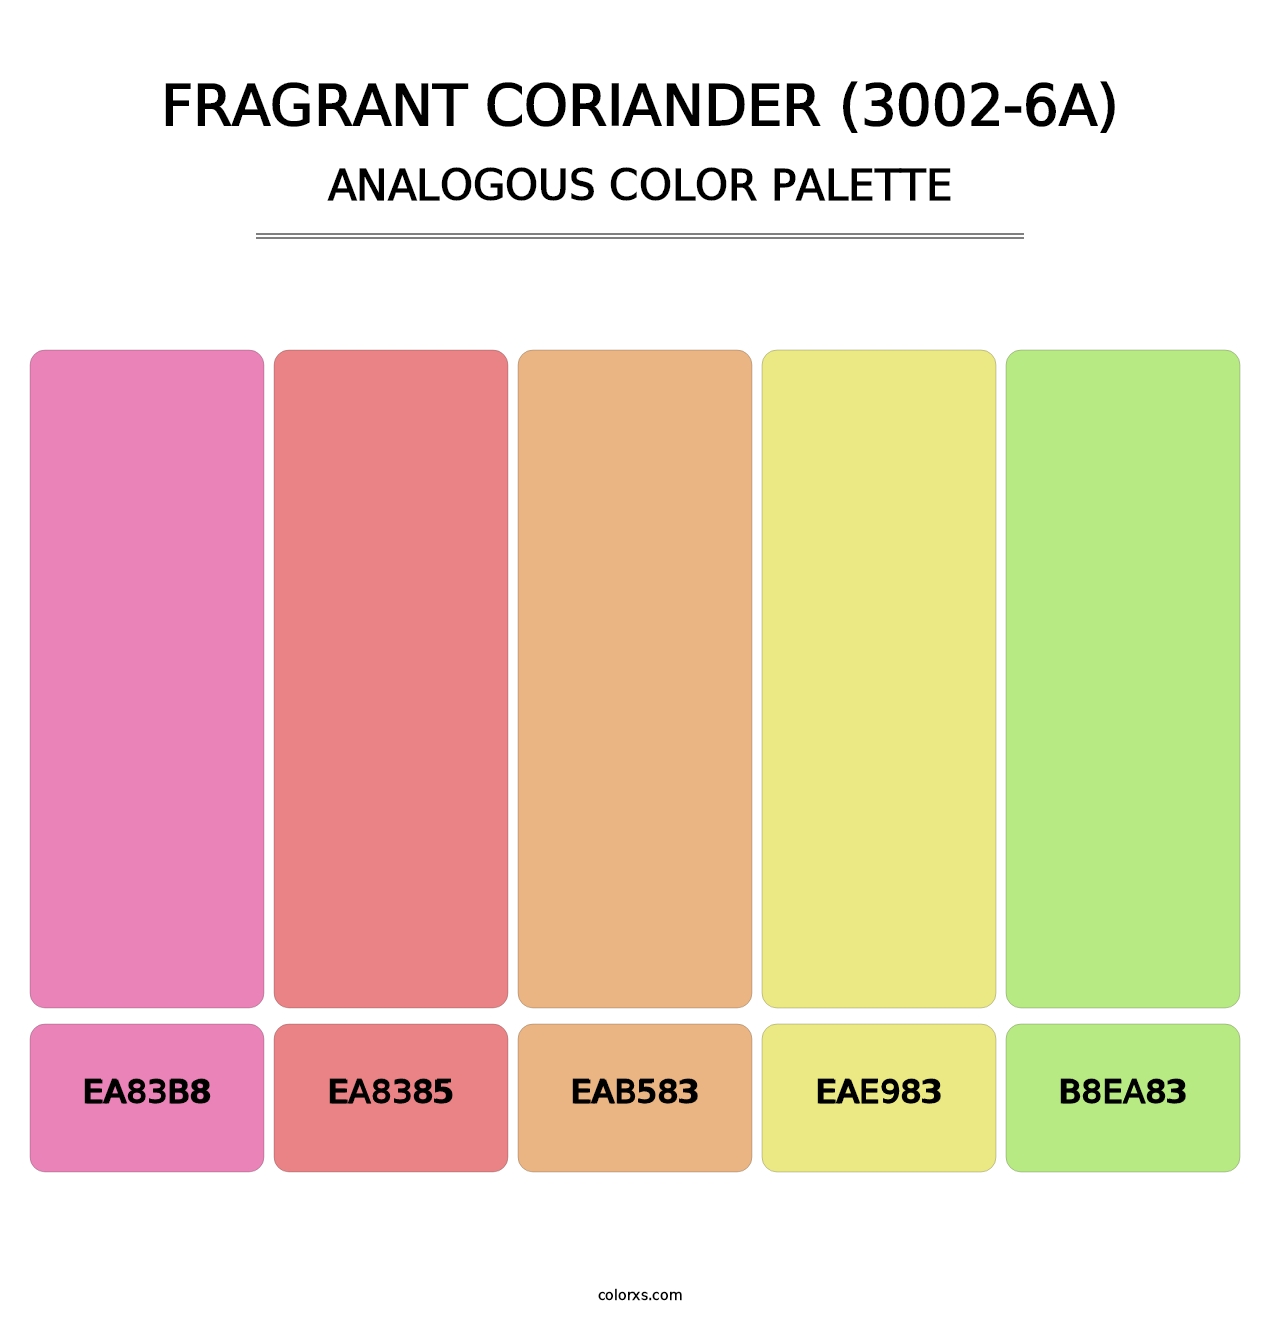 Fragrant Coriander (3002-6A) - Analogous Color Palette